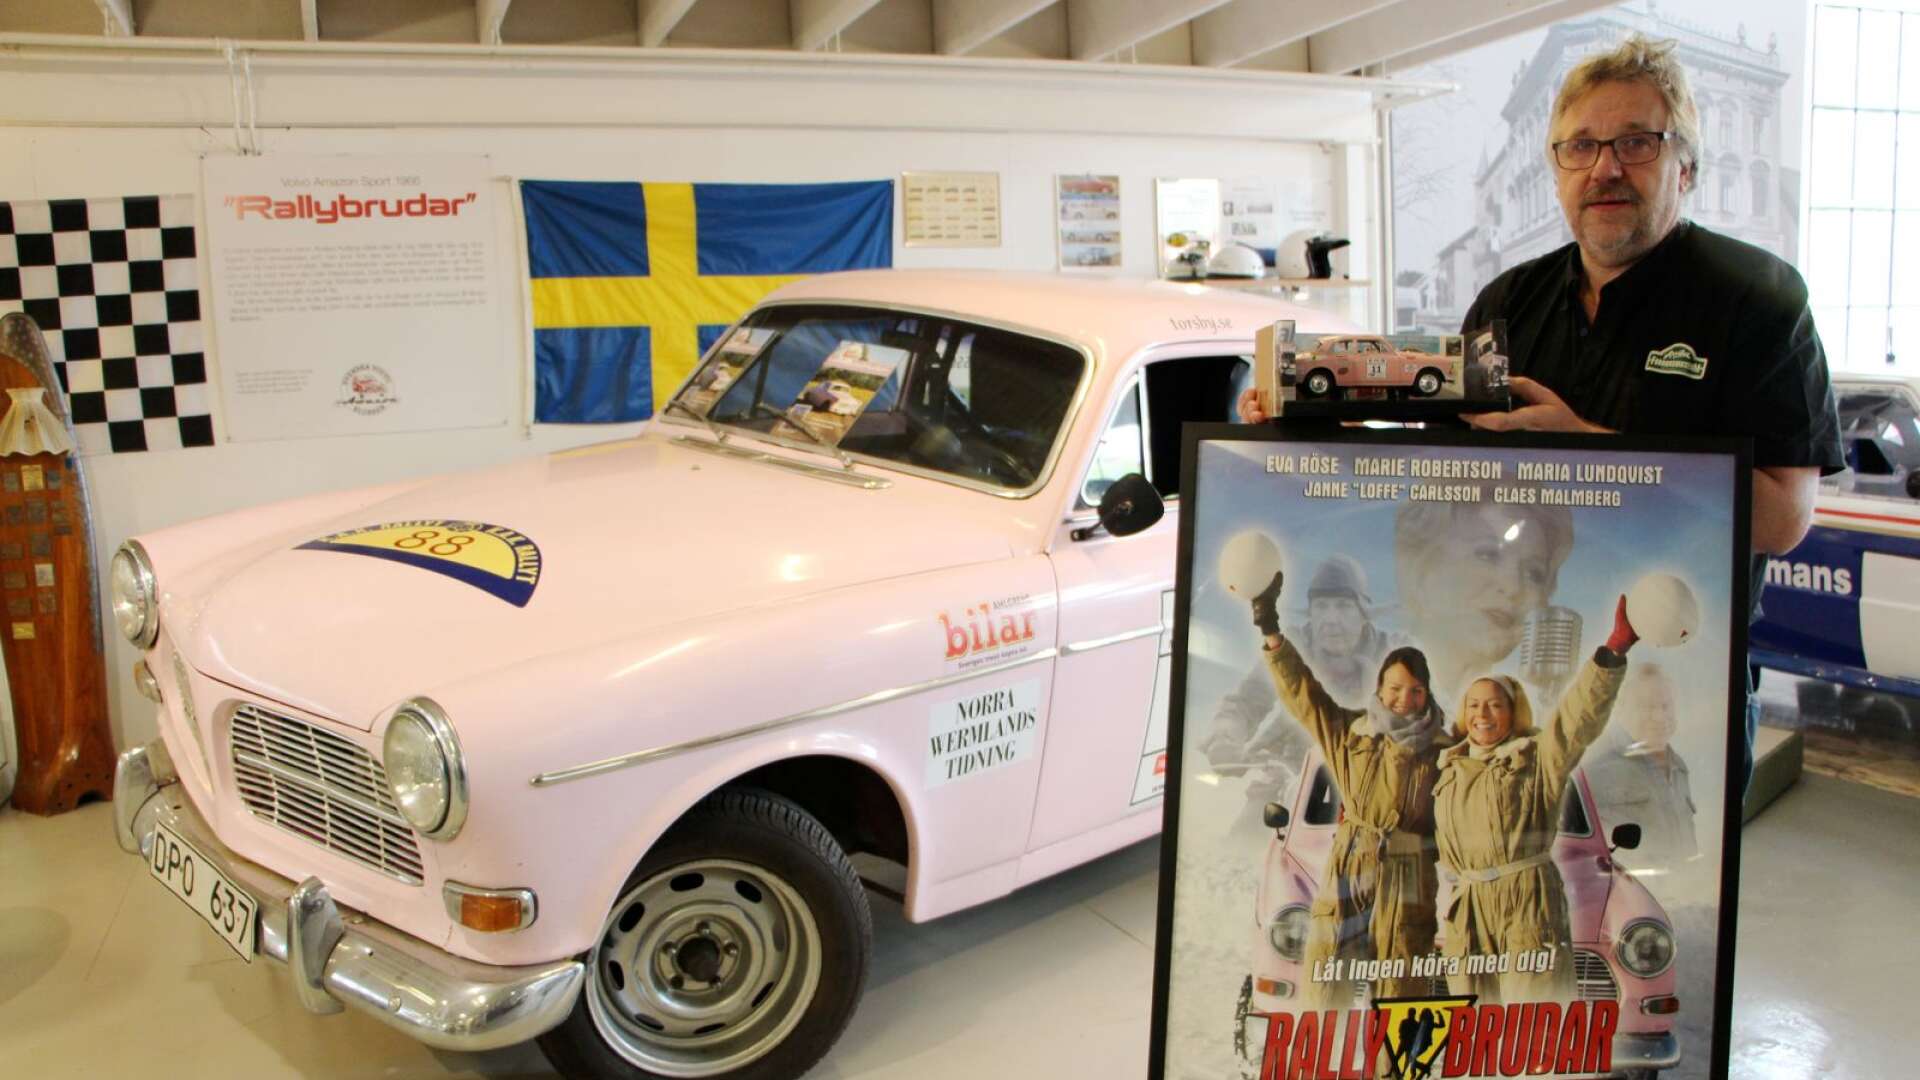 Torsdagen den 6 juni var det premiär för utställningen Rally är kultur på Arvika fordonsmuseum. Här visar intendenten Karl-Axel Evrell upp den rosa Volvo Amazon som kördes av Eva Röse och Marie Robertson i filmen Rallybrudar.